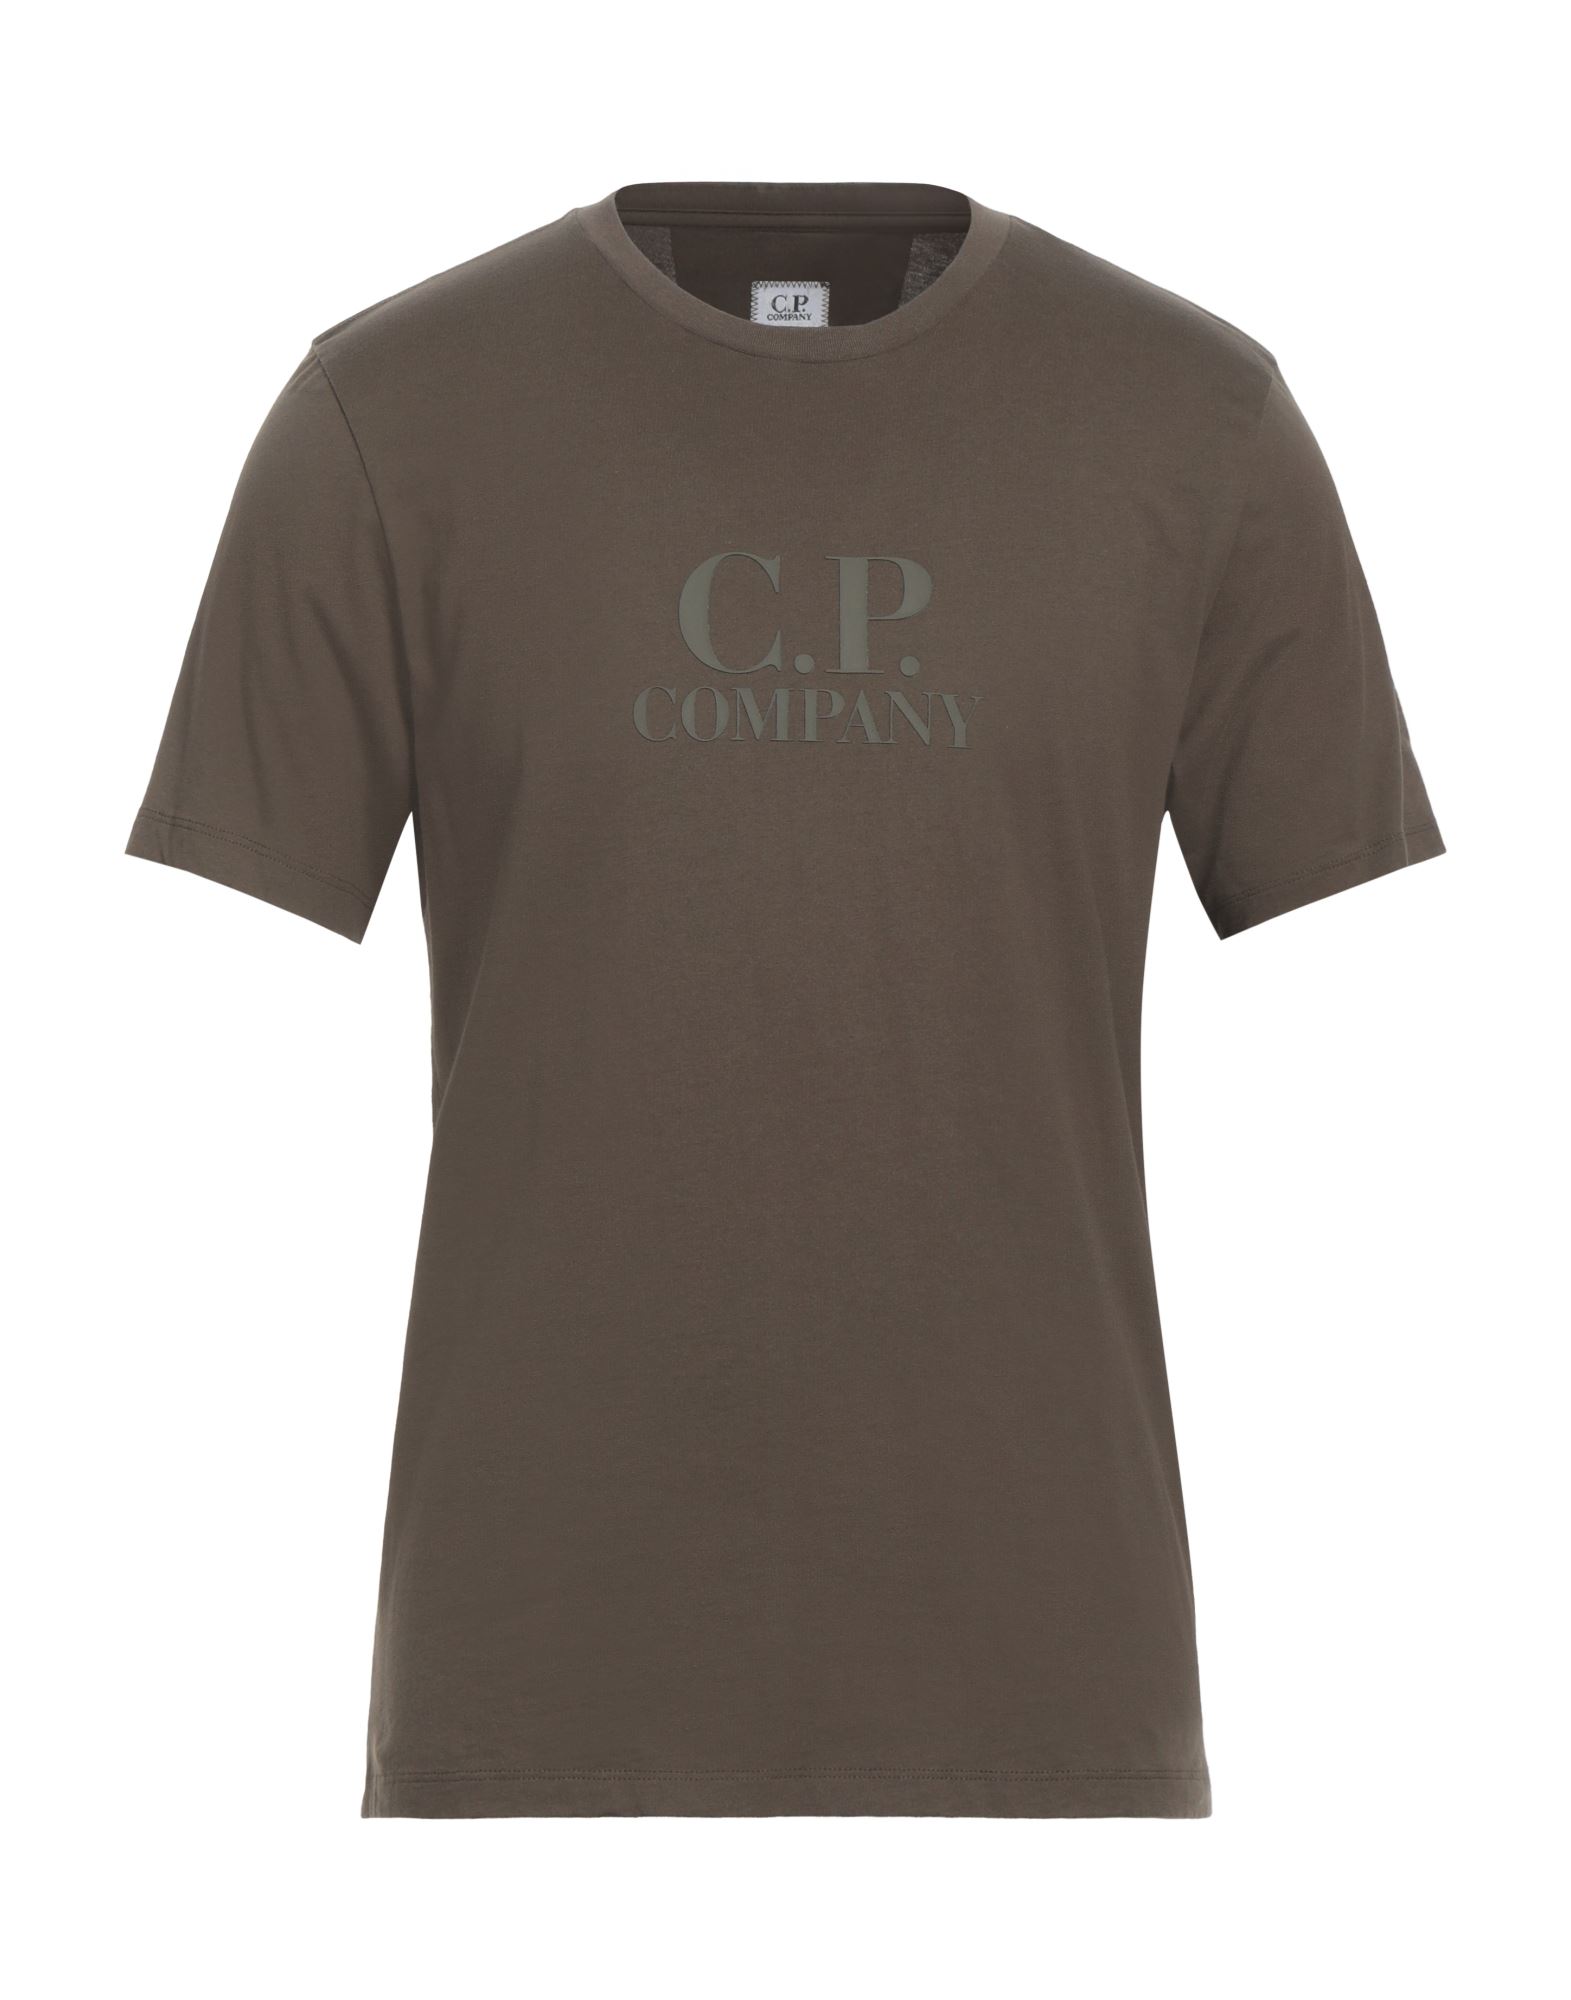 C.P. COMPANY T-shirts Herren Militärgrün von C.P. COMPANY